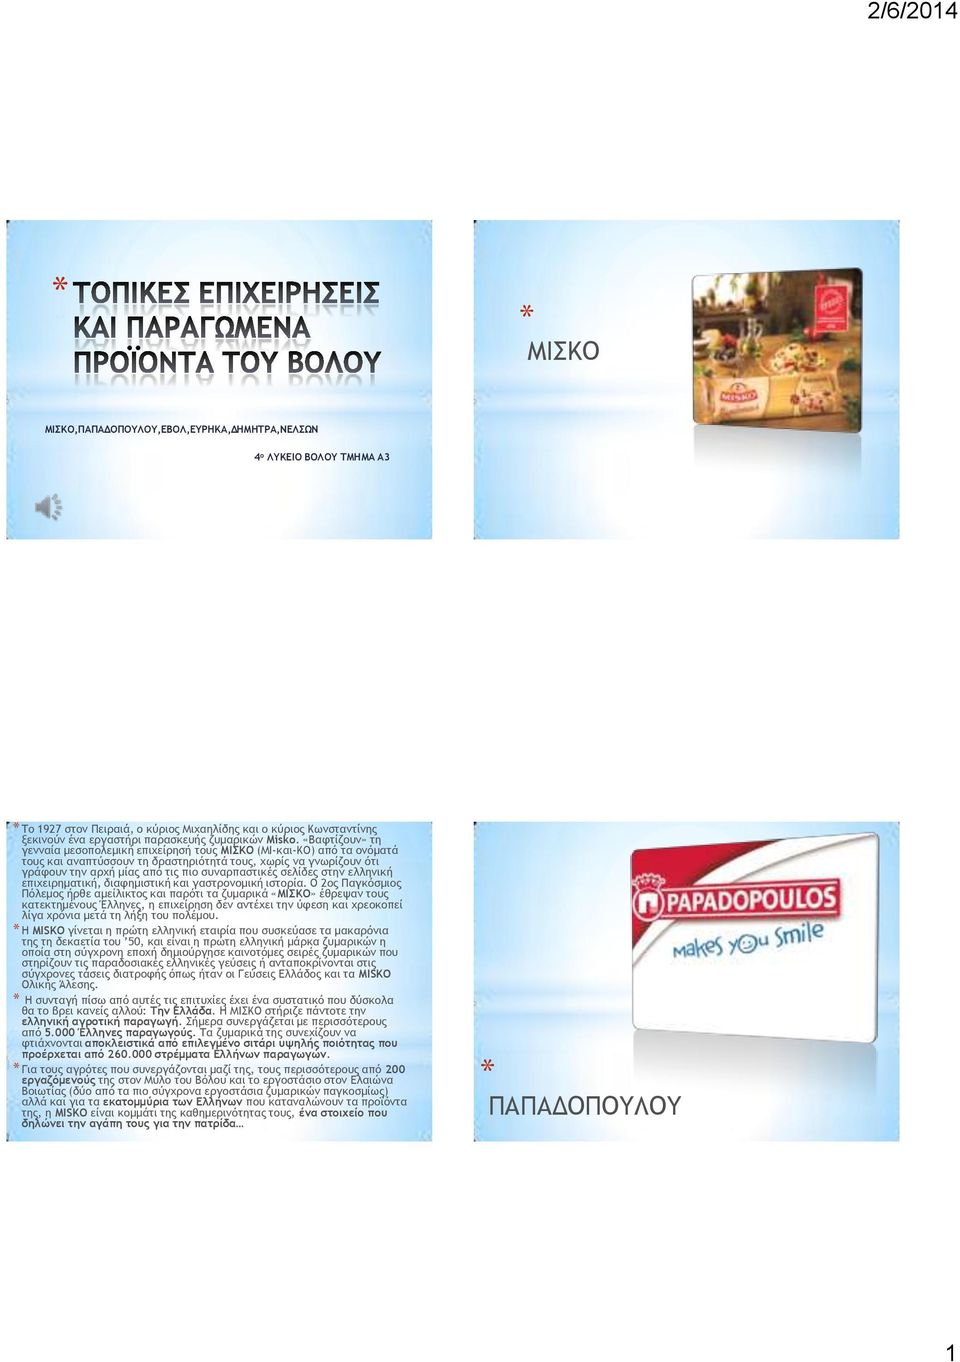 σελίδες στην ελληνική επιχειρηματική, διαφημιστική και γαστρονομική ιστορία.